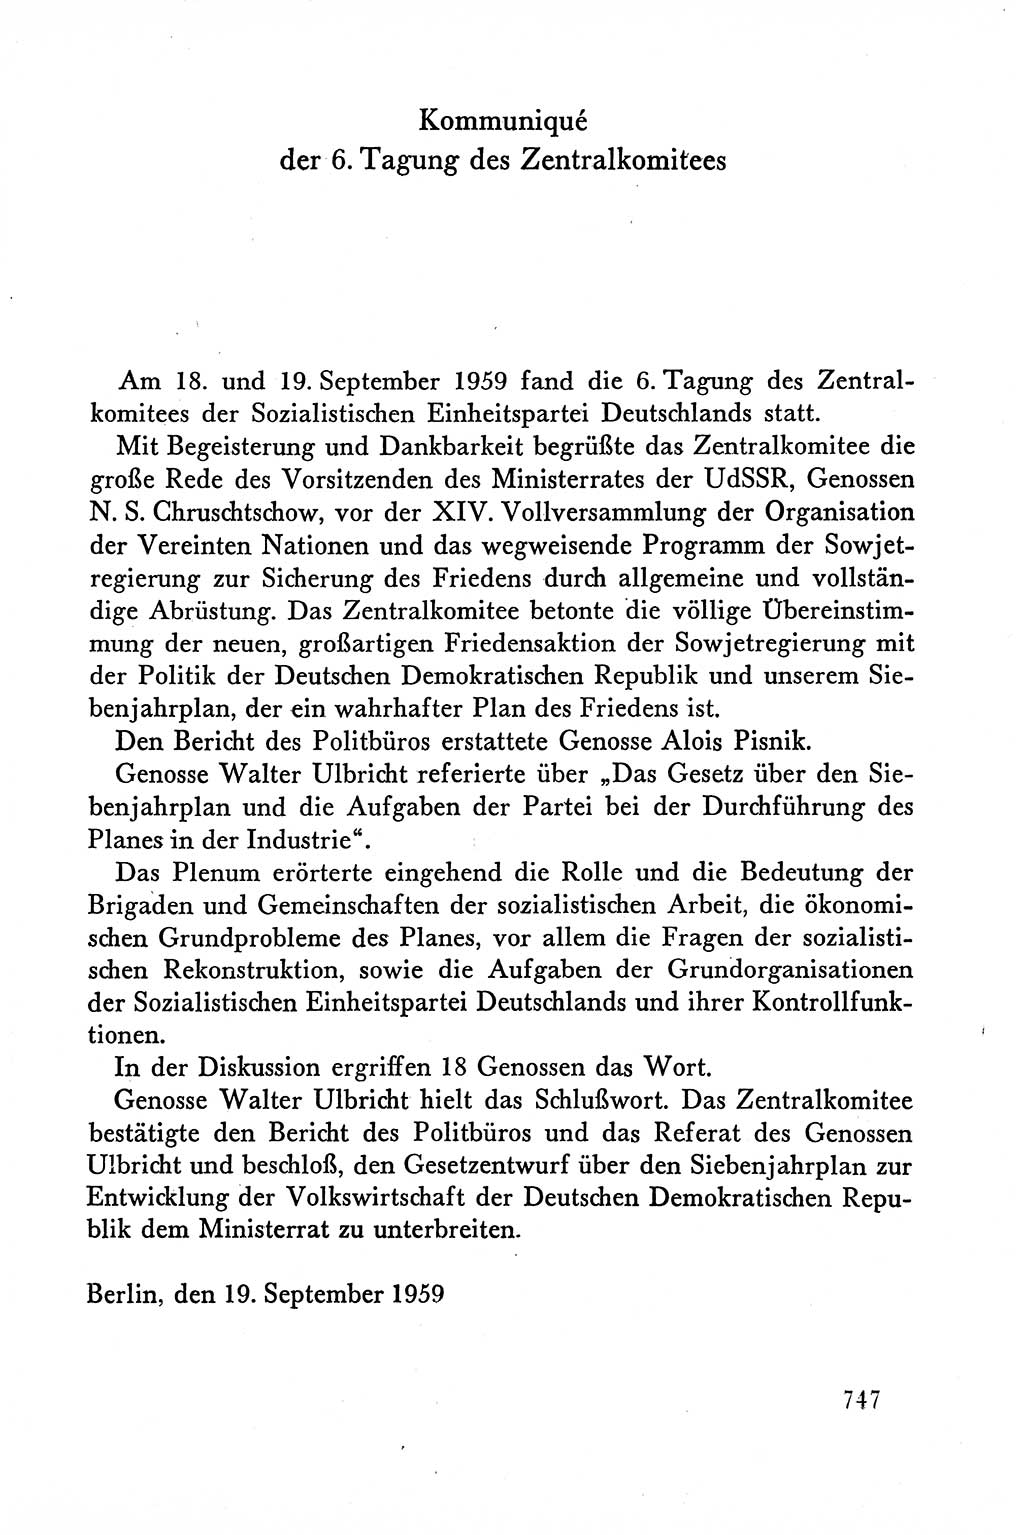 Dokumente der Sozialistischen Einheitspartei Deutschlands (SED) [Deutsche Demokratische Republik (DDR)] 1958-1959, Seite 747 (Dok. SED DDR 1958-1959, S. 747)